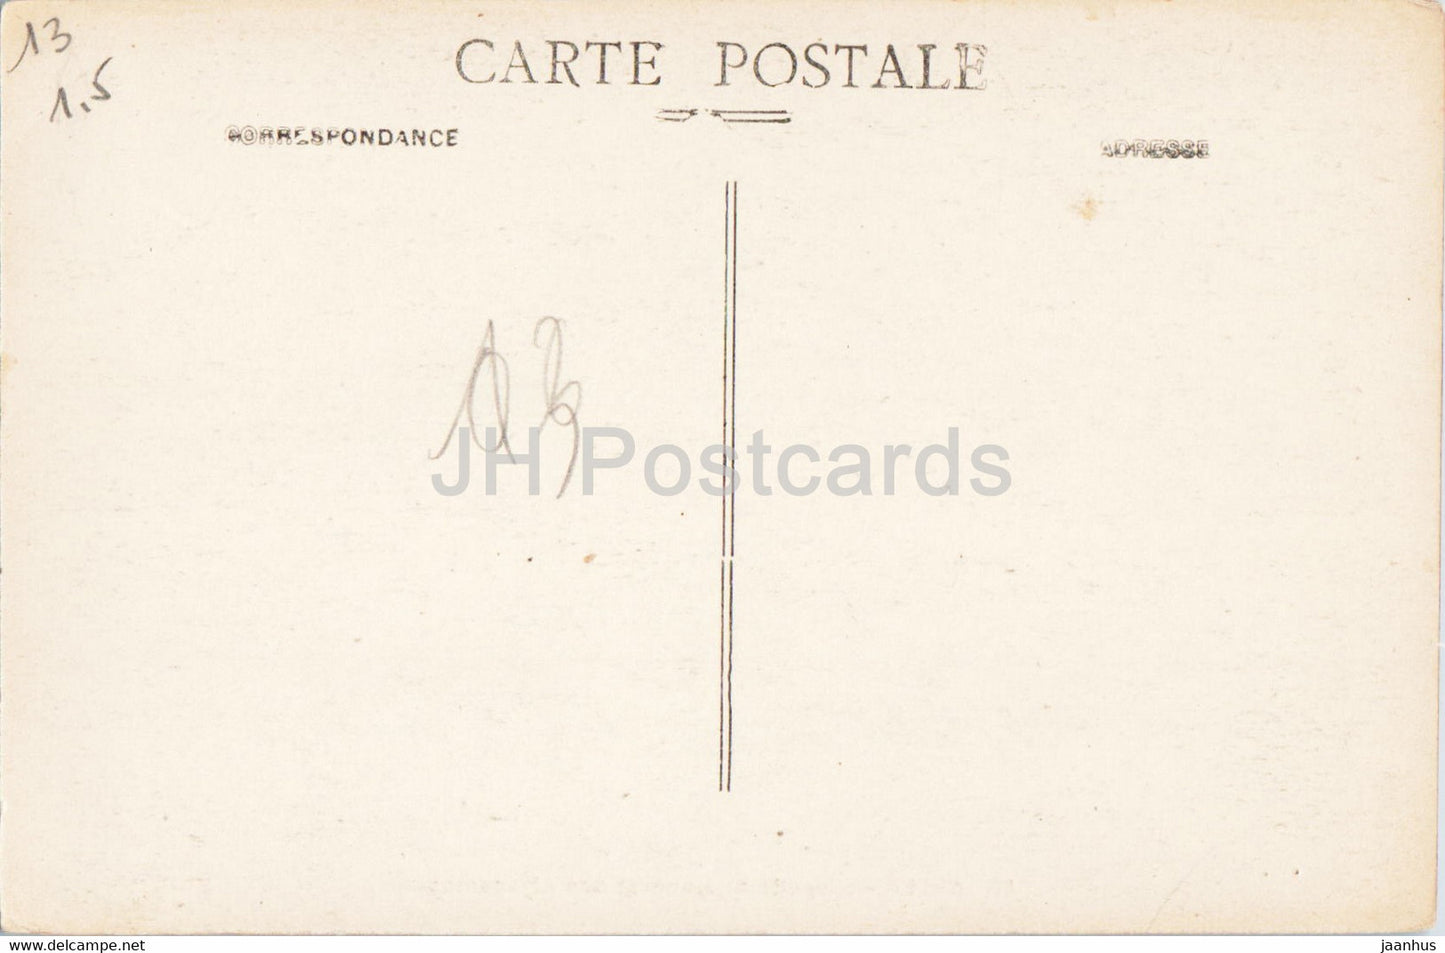 Arles - Chapelle St Honorat des Alyscamps - 80 - carte postale ancienne - France - inutilisée